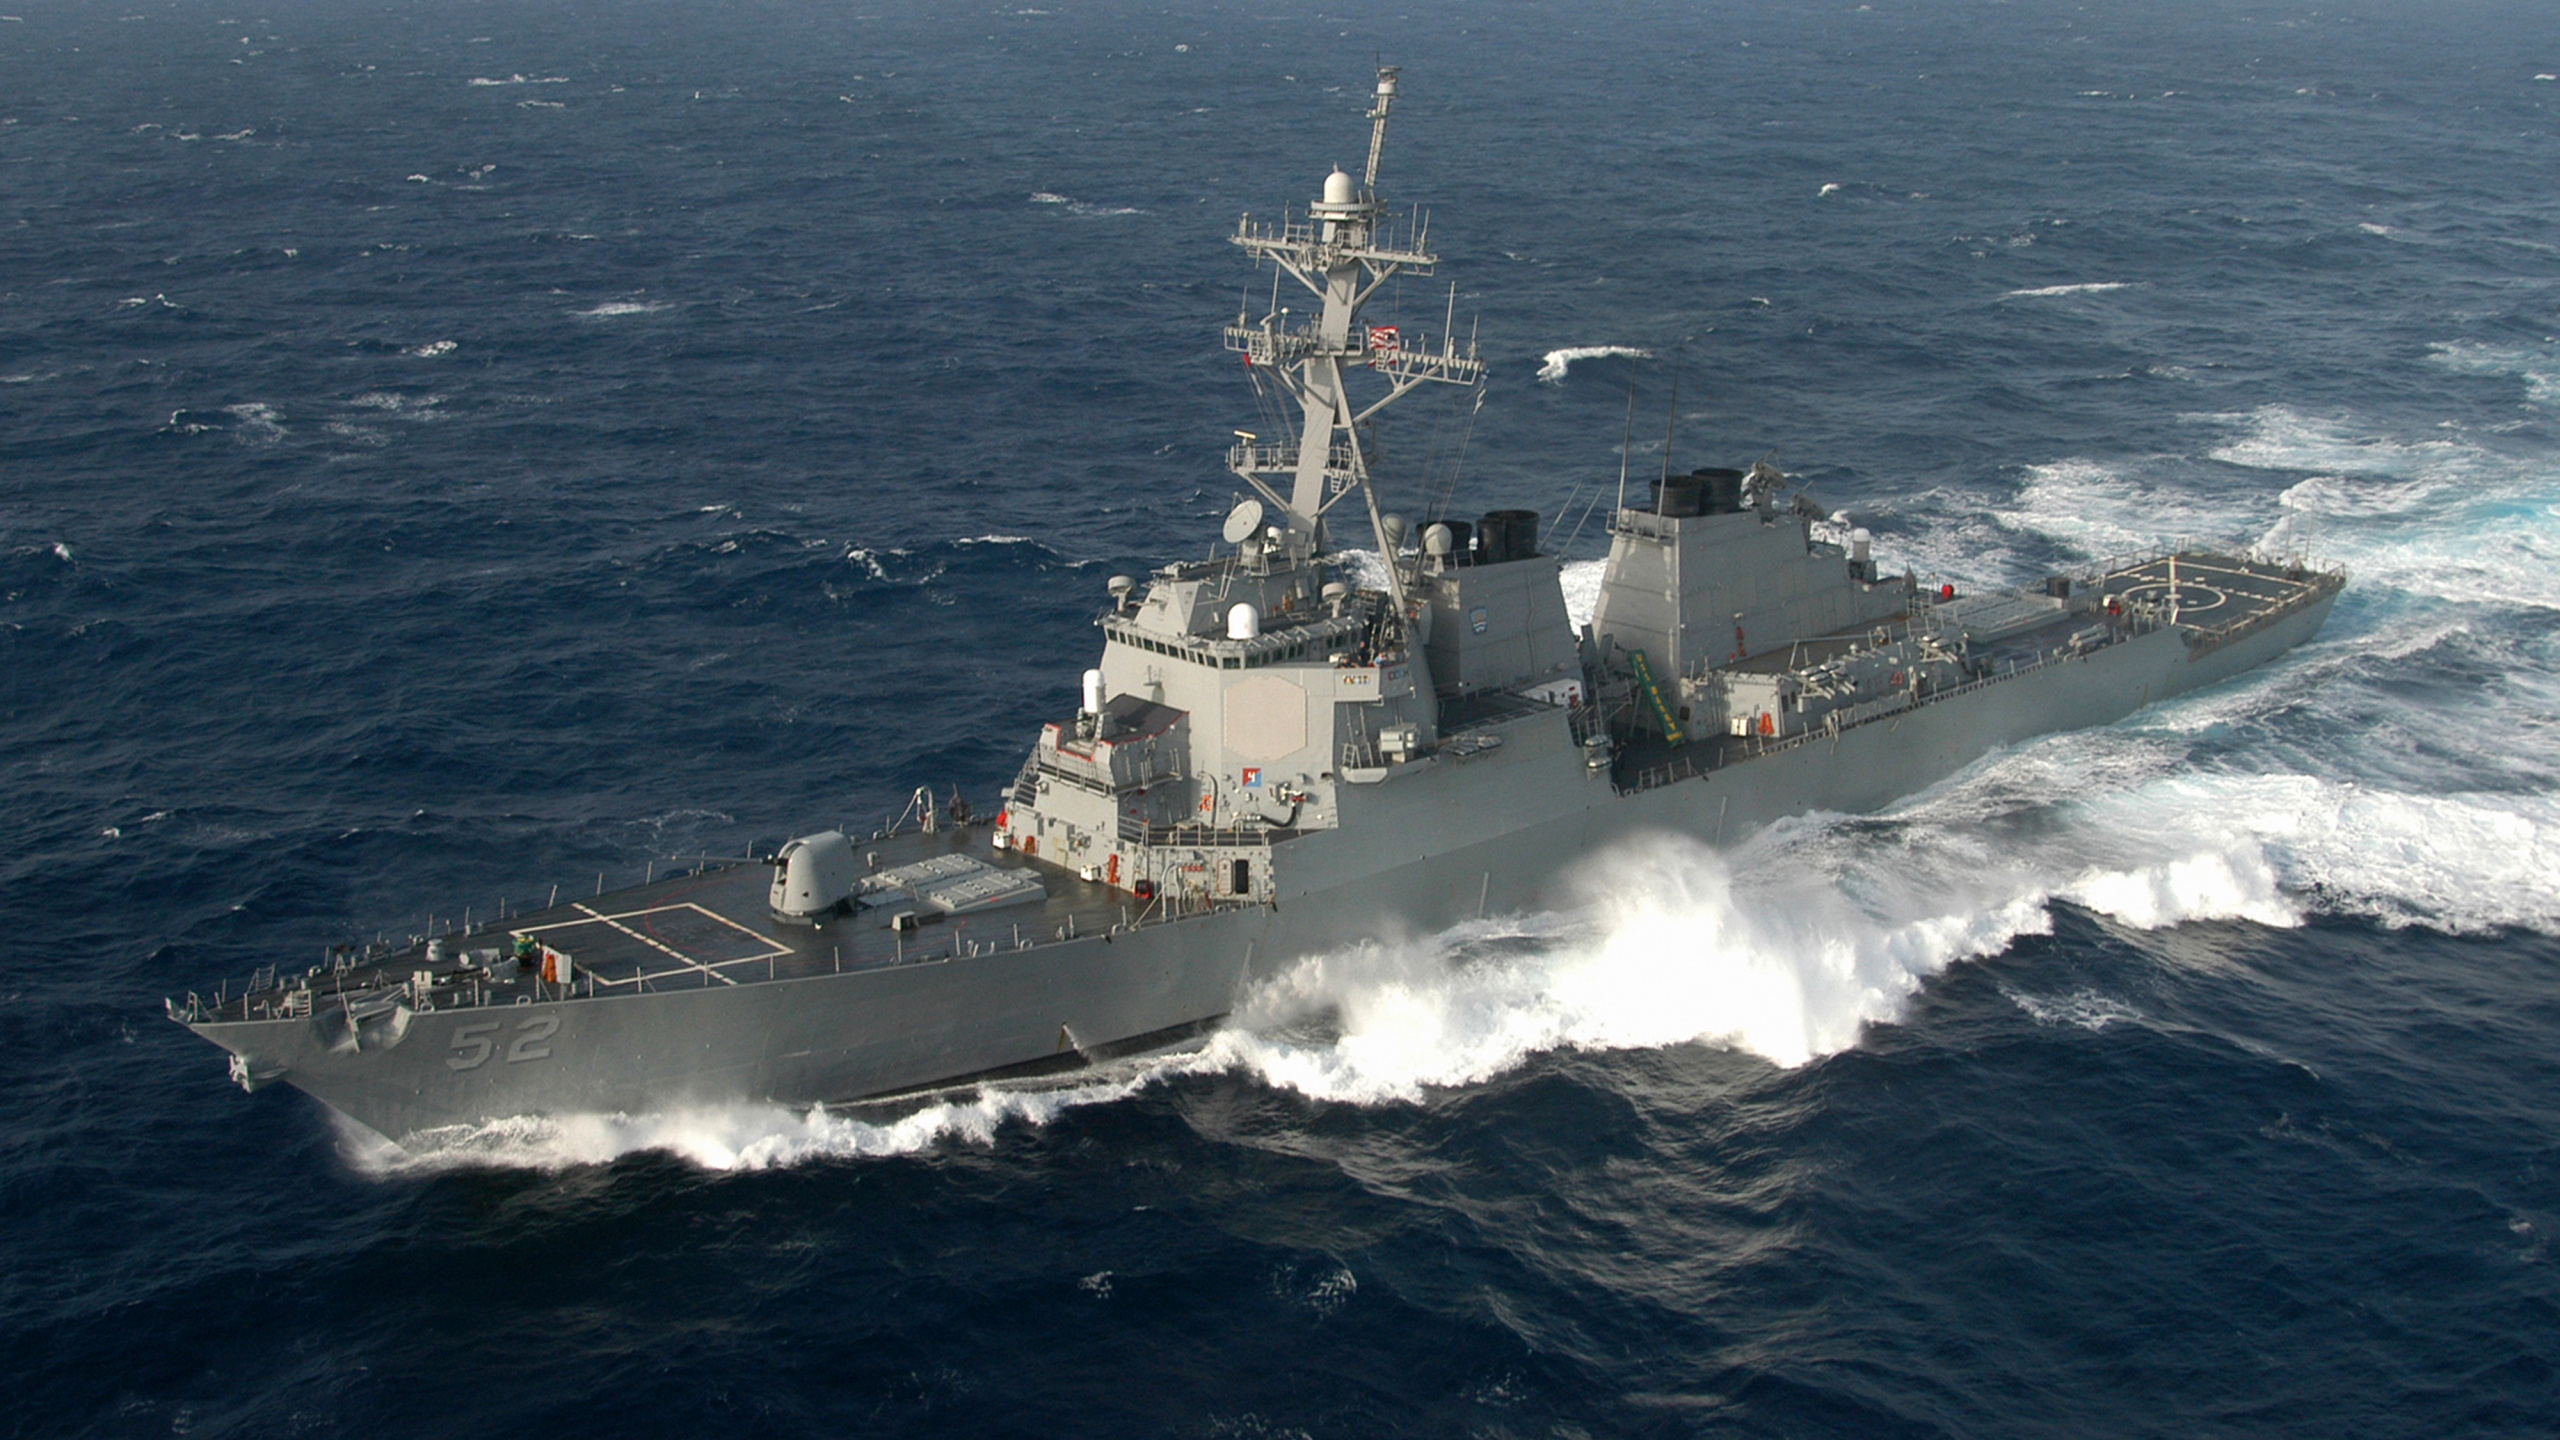 驱逐舰, 美国海军, 军舰, 海军的船, 海军 壁纸 2560x1440 允许